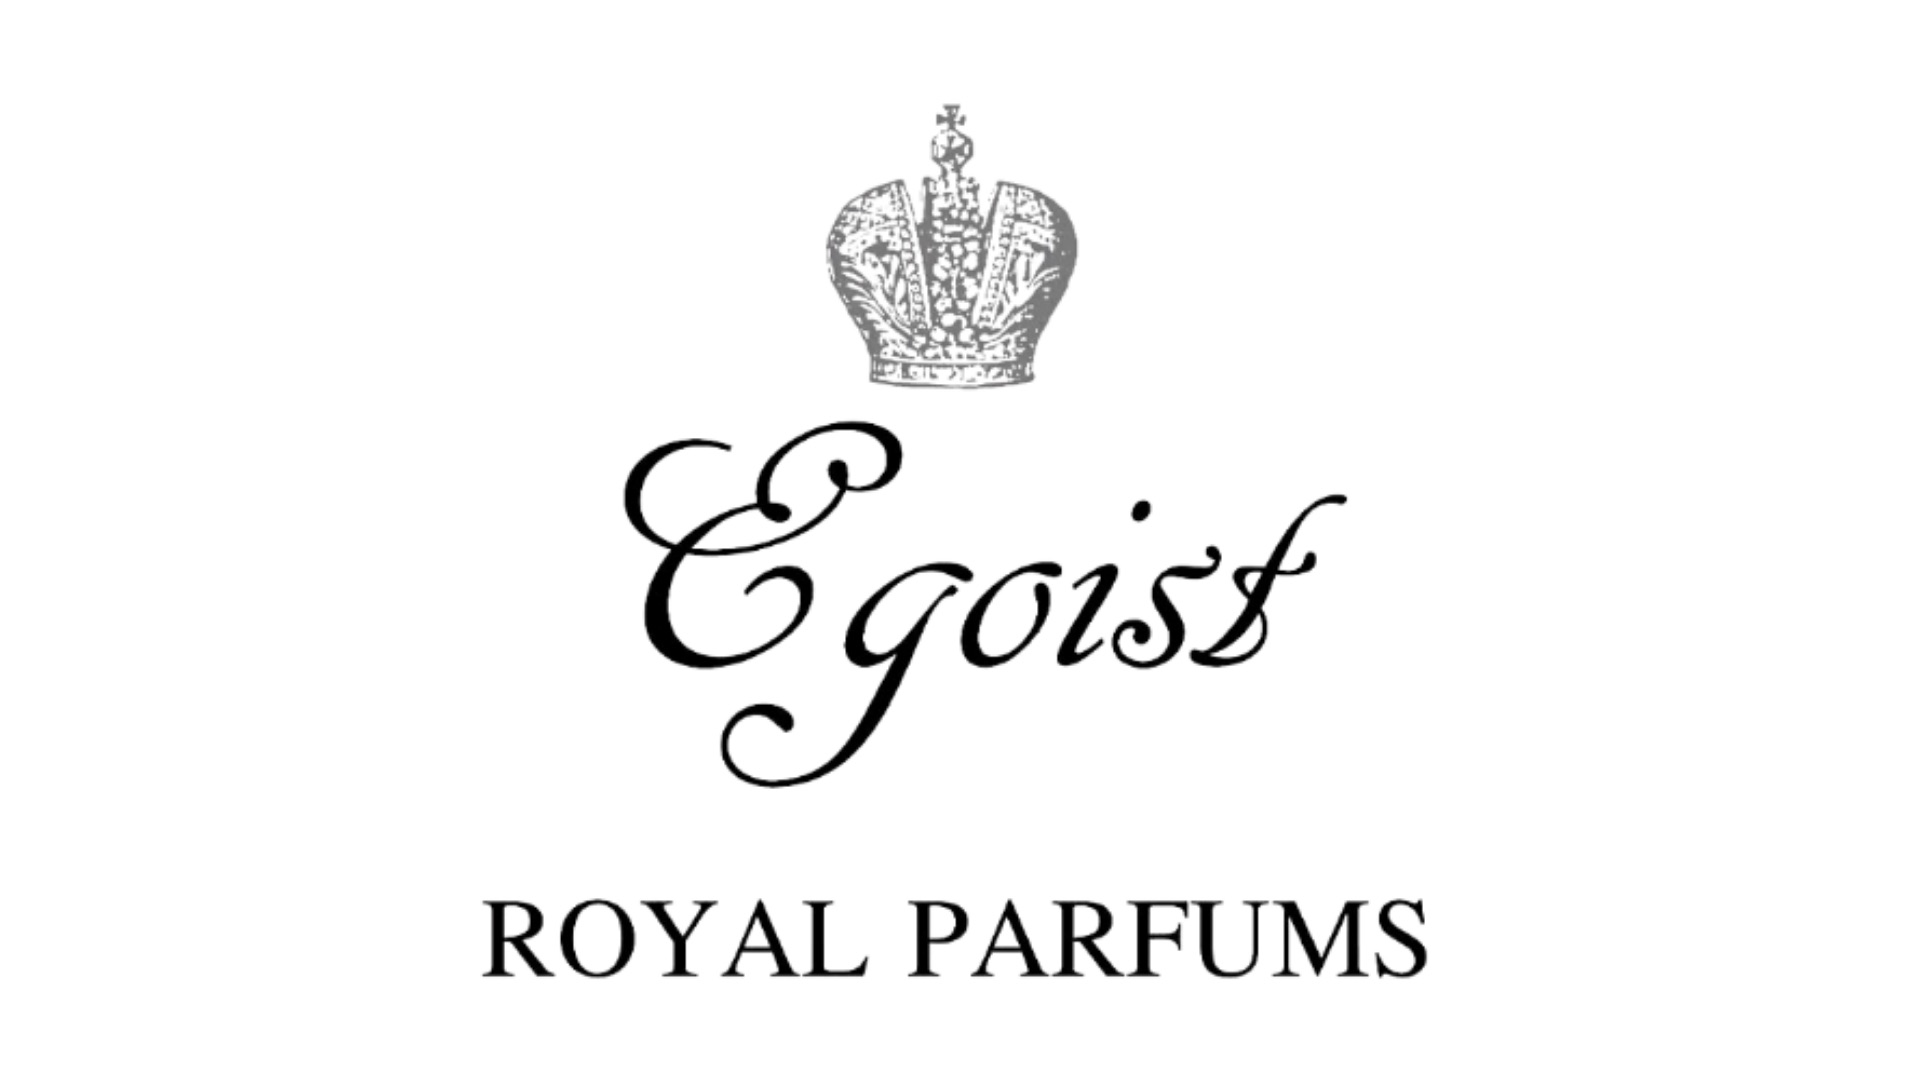 Egoist Royal Parfums